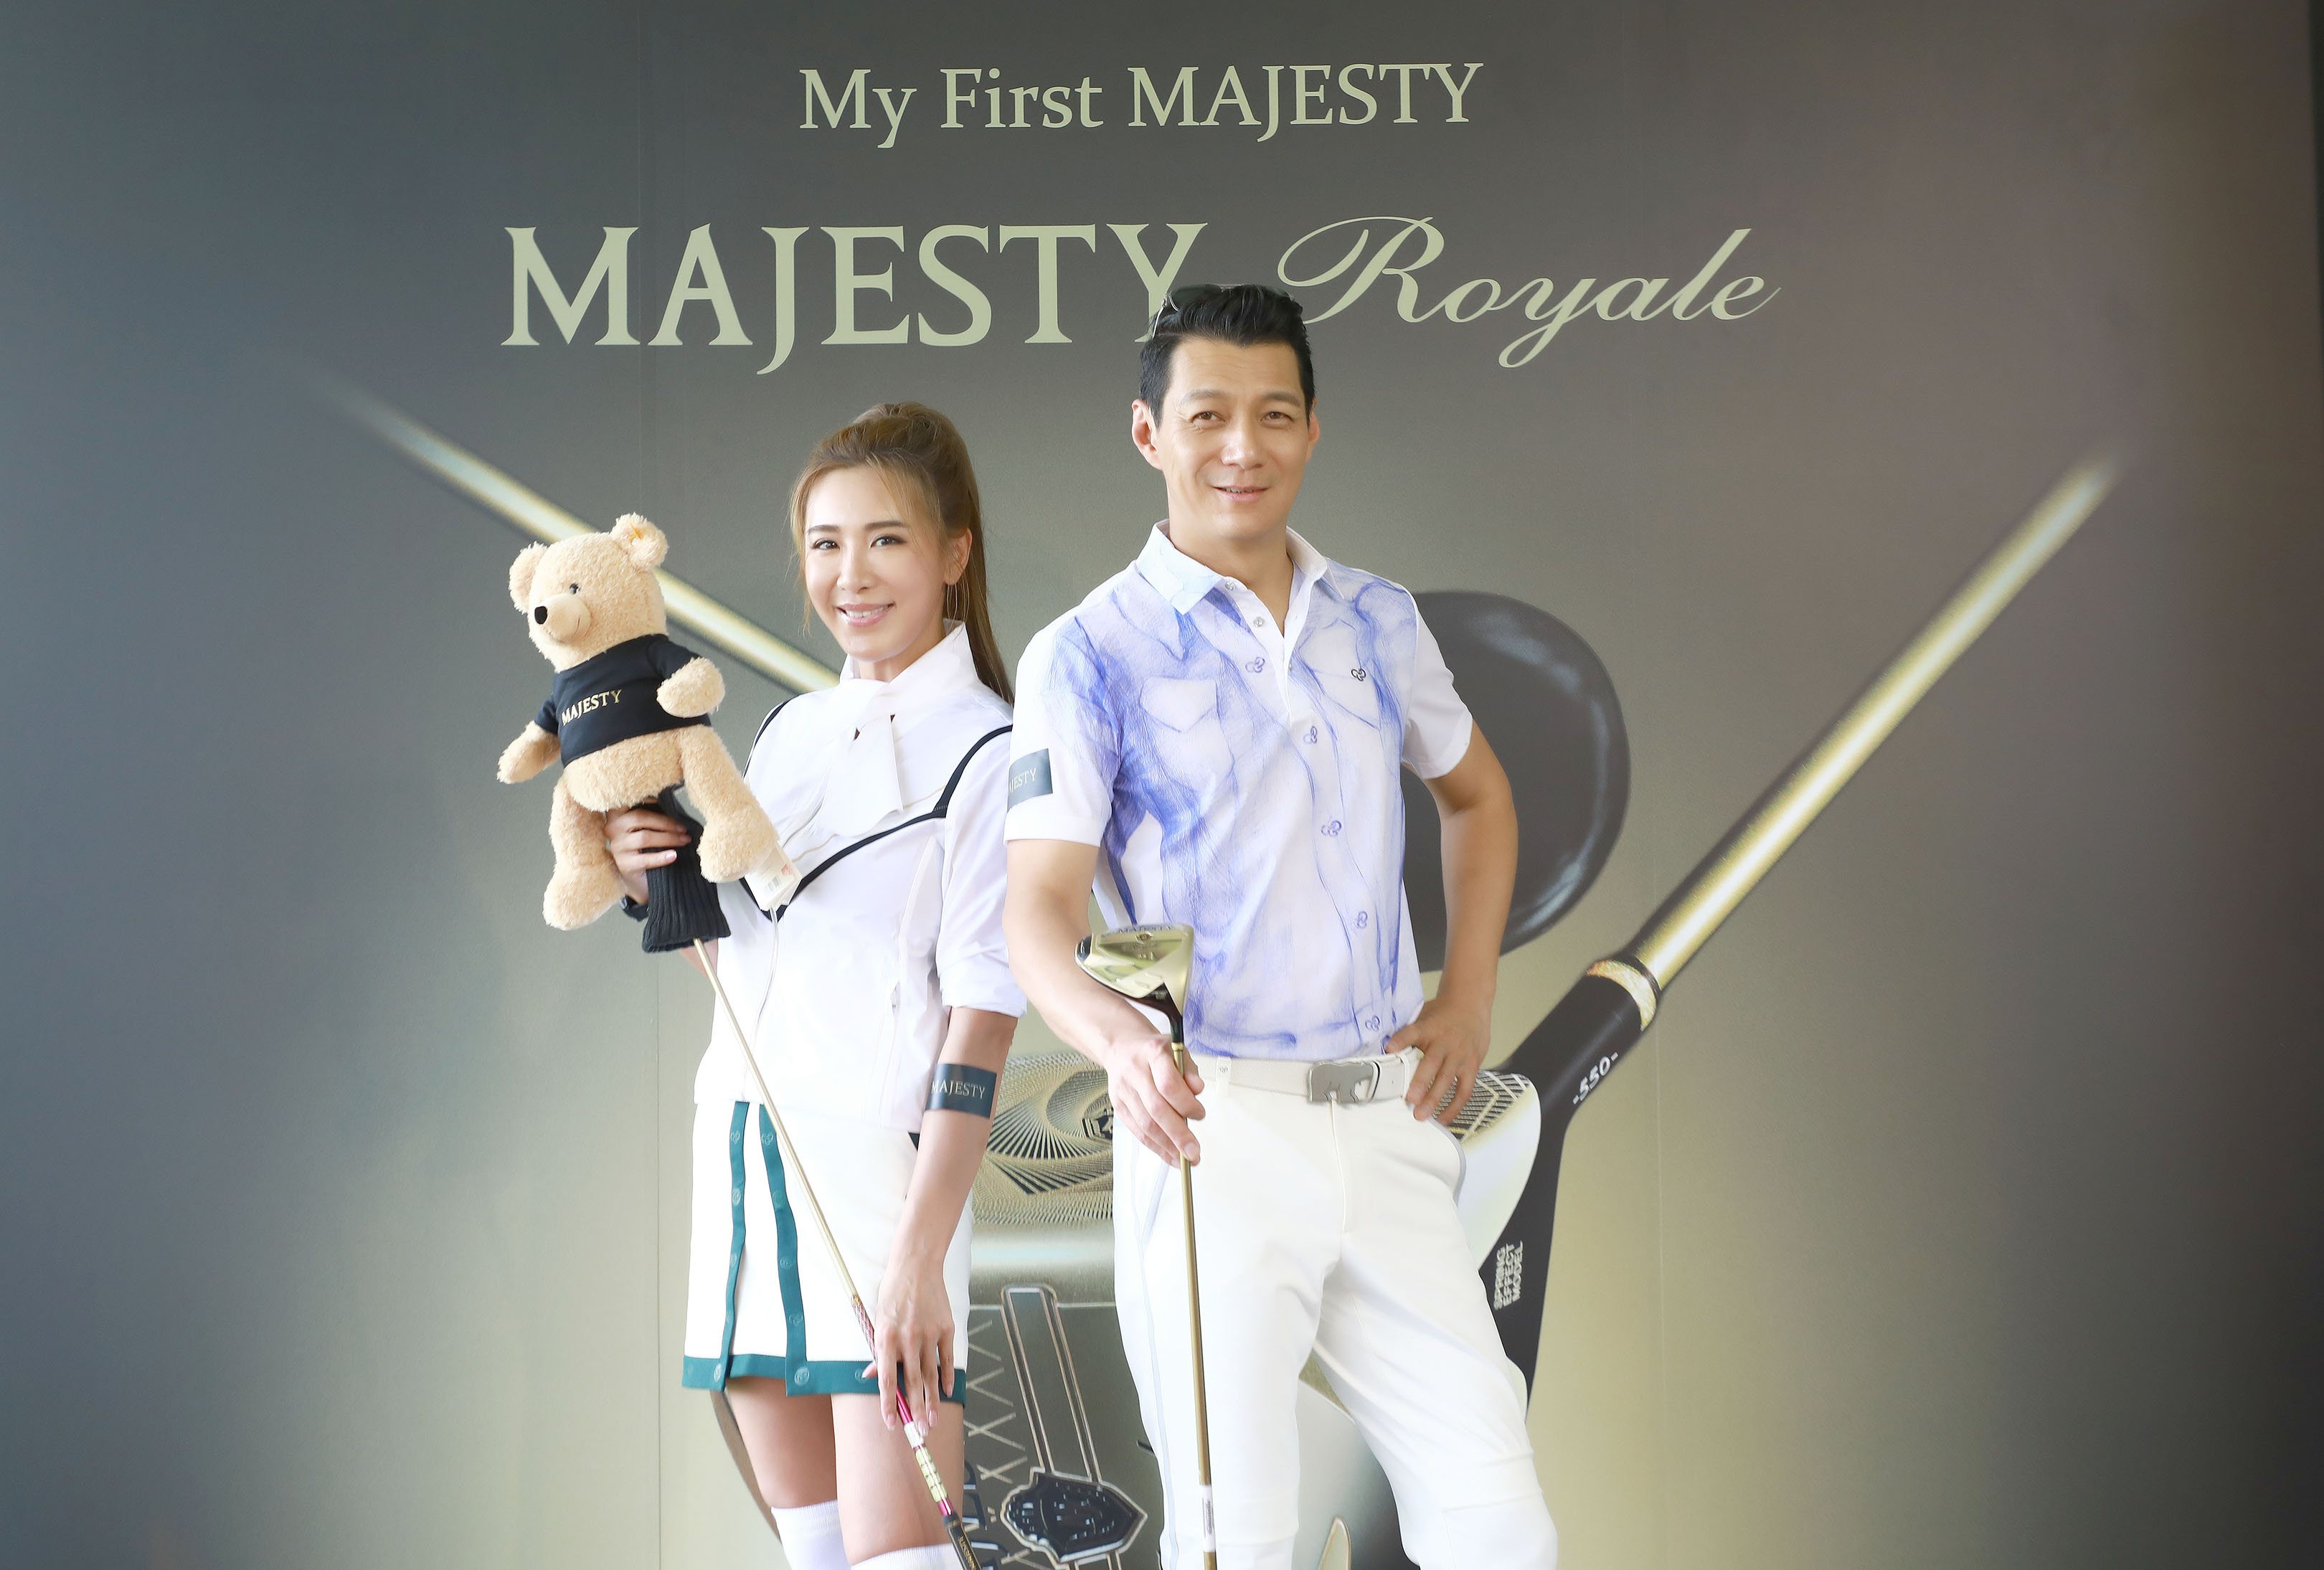 majesty瑪嘉斯帝此次邀請藝人胡小禎與聶雲一同體驗全新majesty royale皇家系列。官方提供